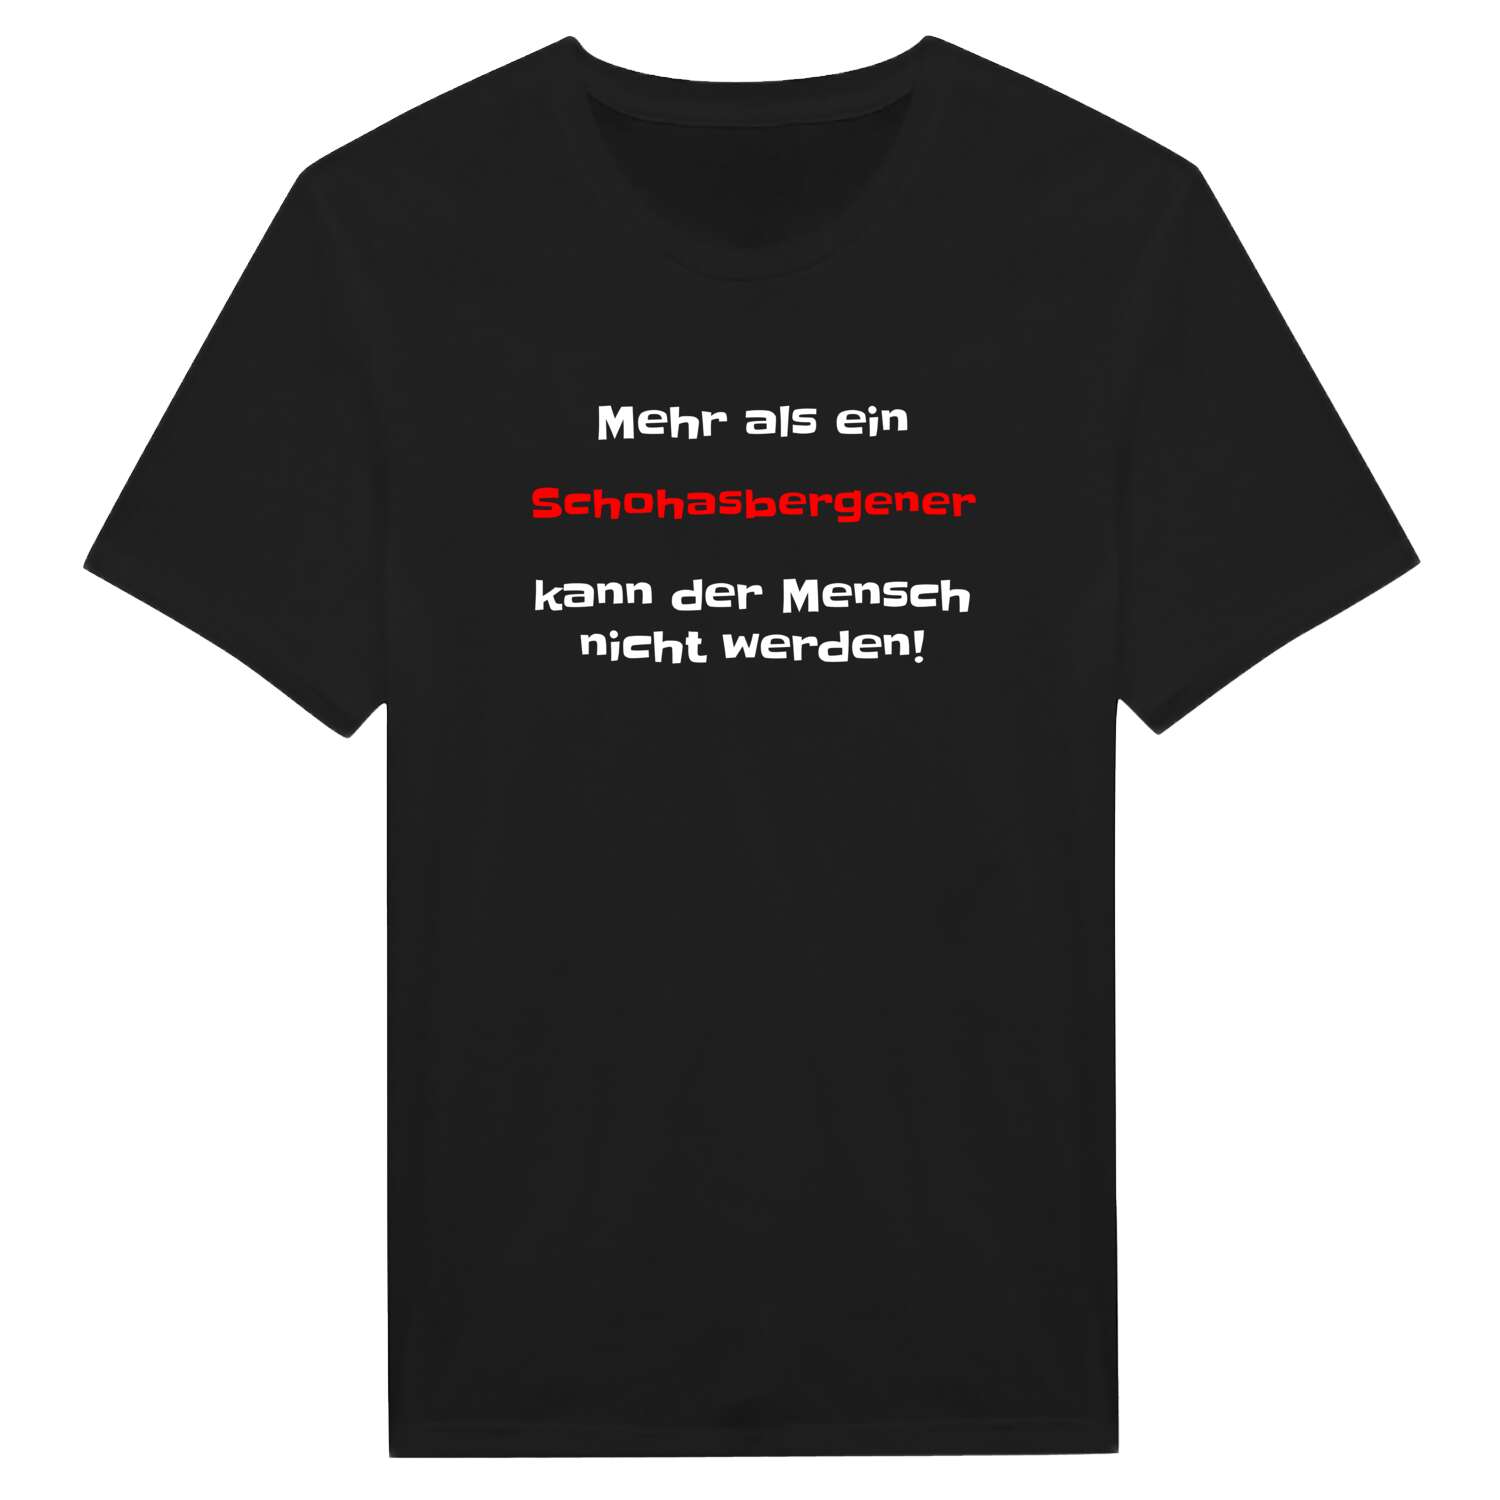 Schohasbergen T-Shirt »Mehr als ein«